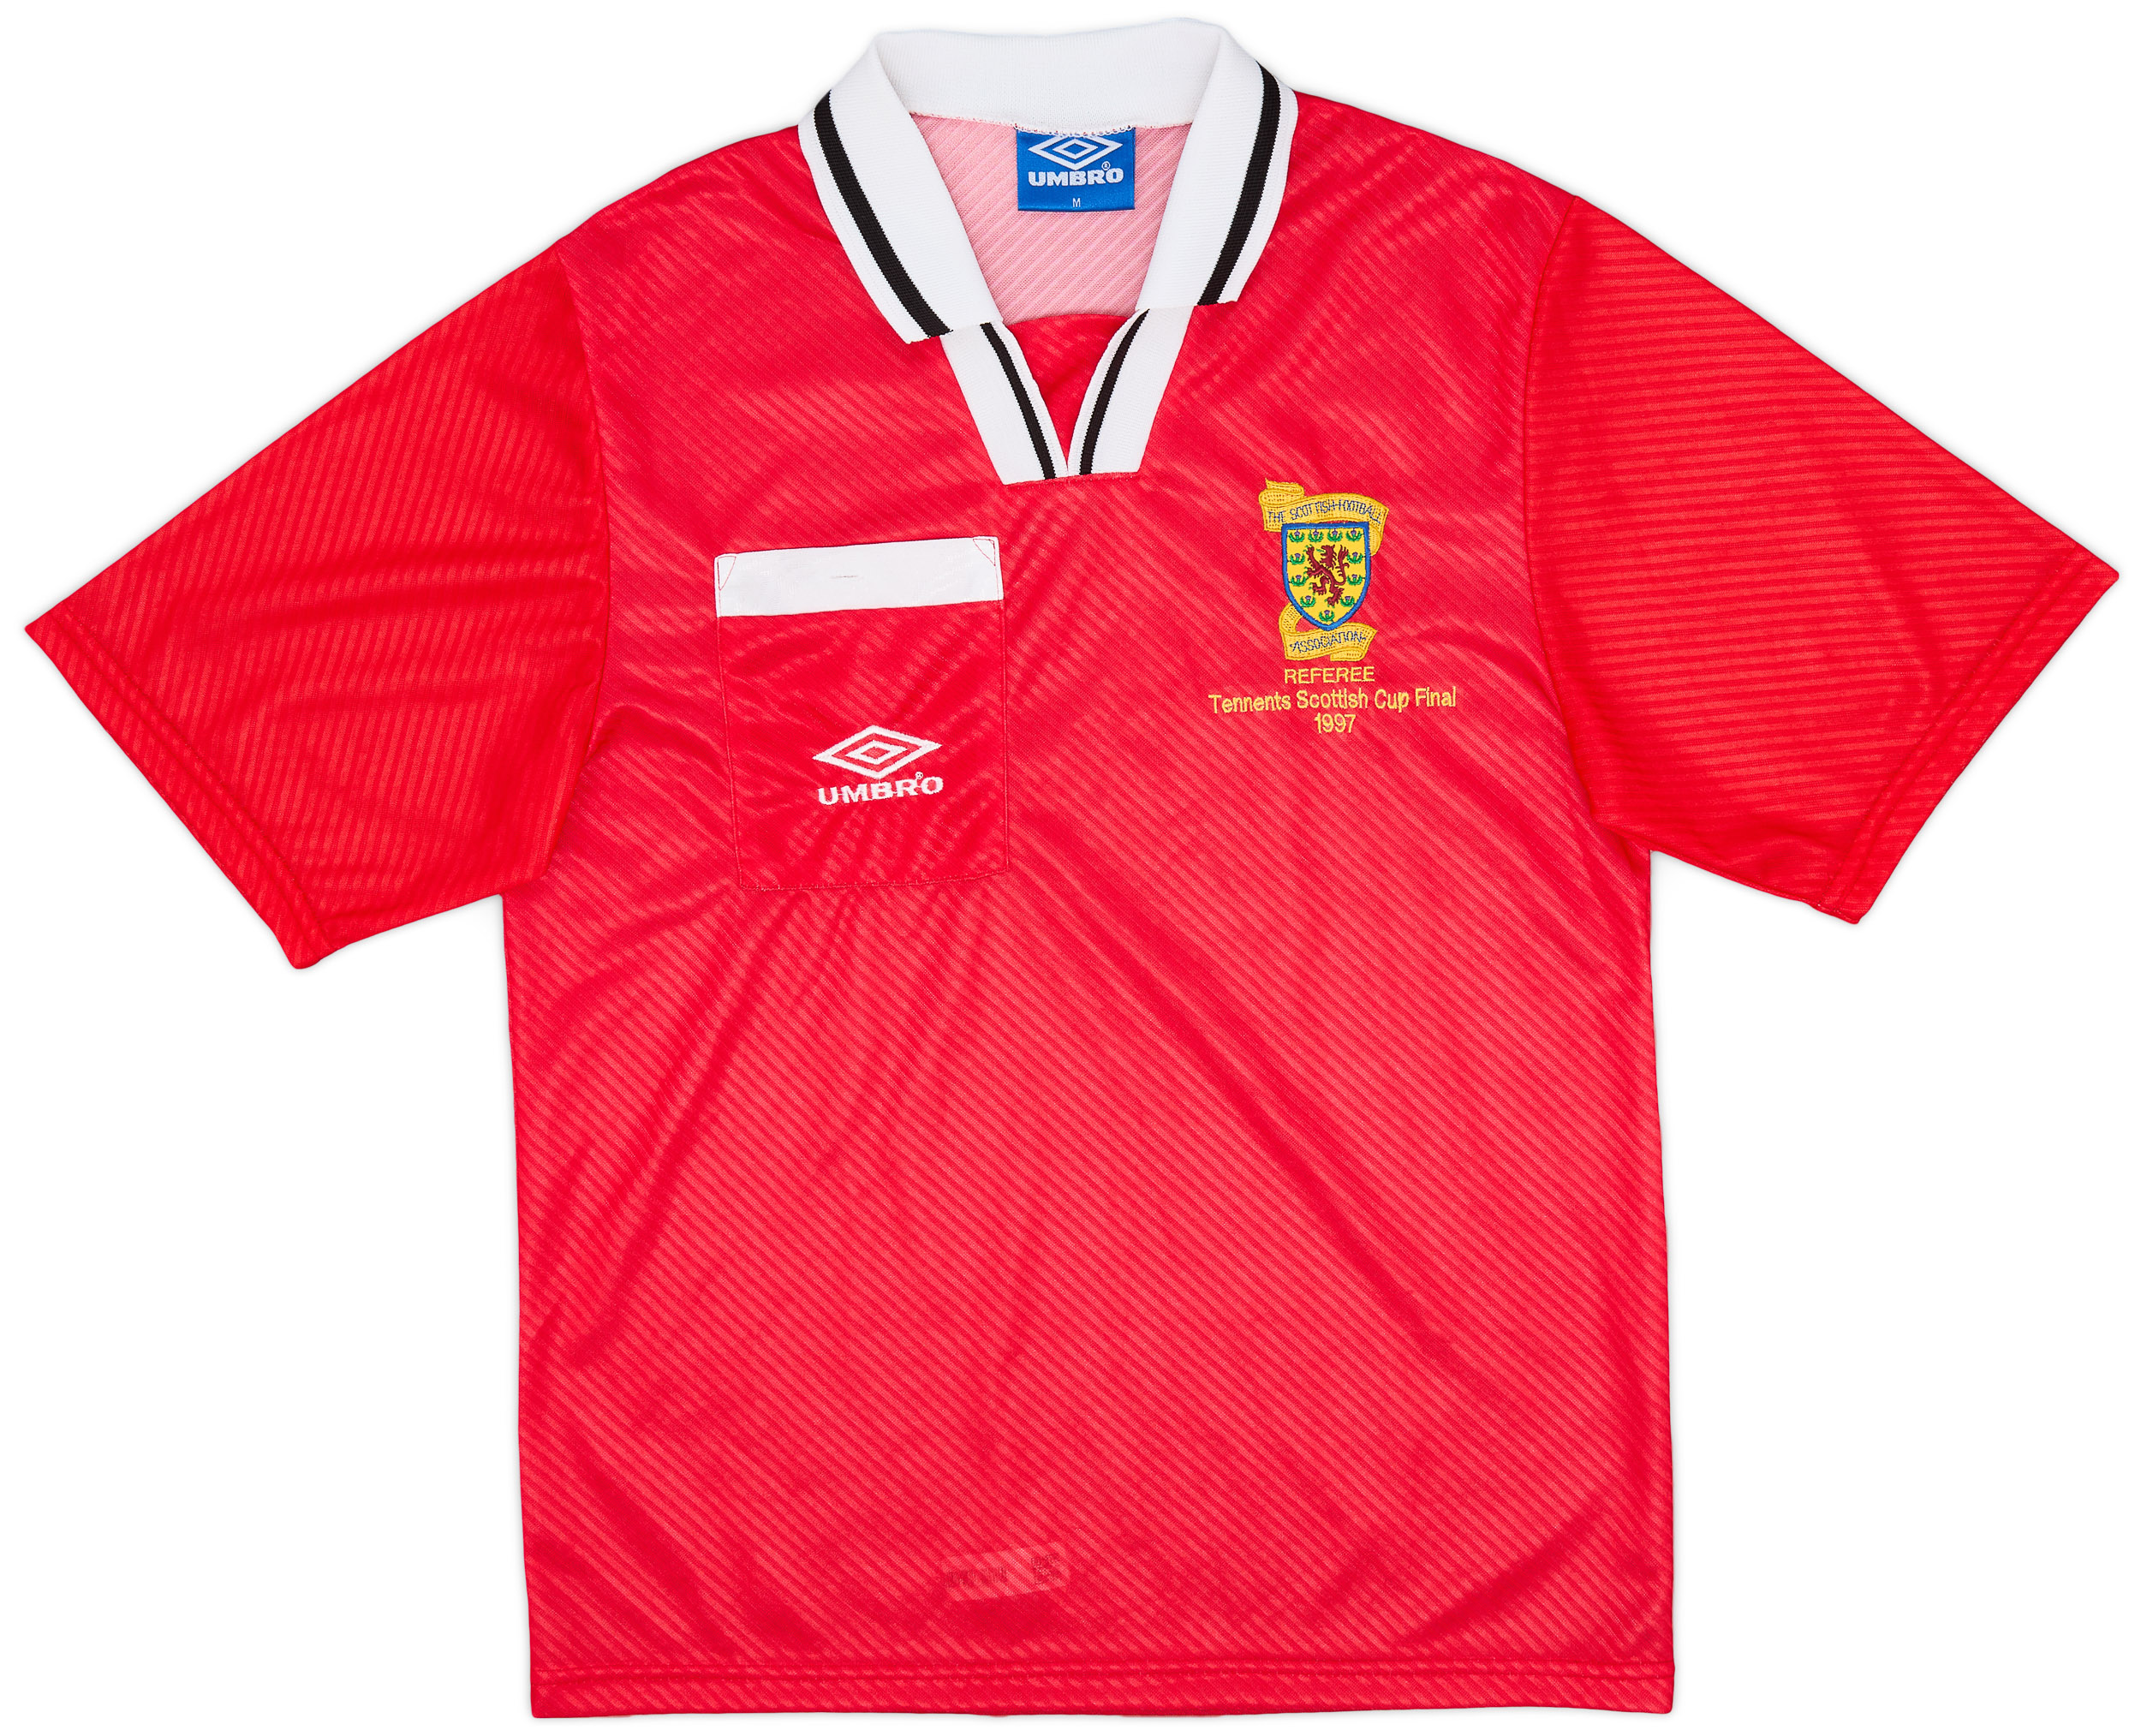 1997-98 Scotland 'Scottish Cup Final' Referee Shirt - 9/10 - ()